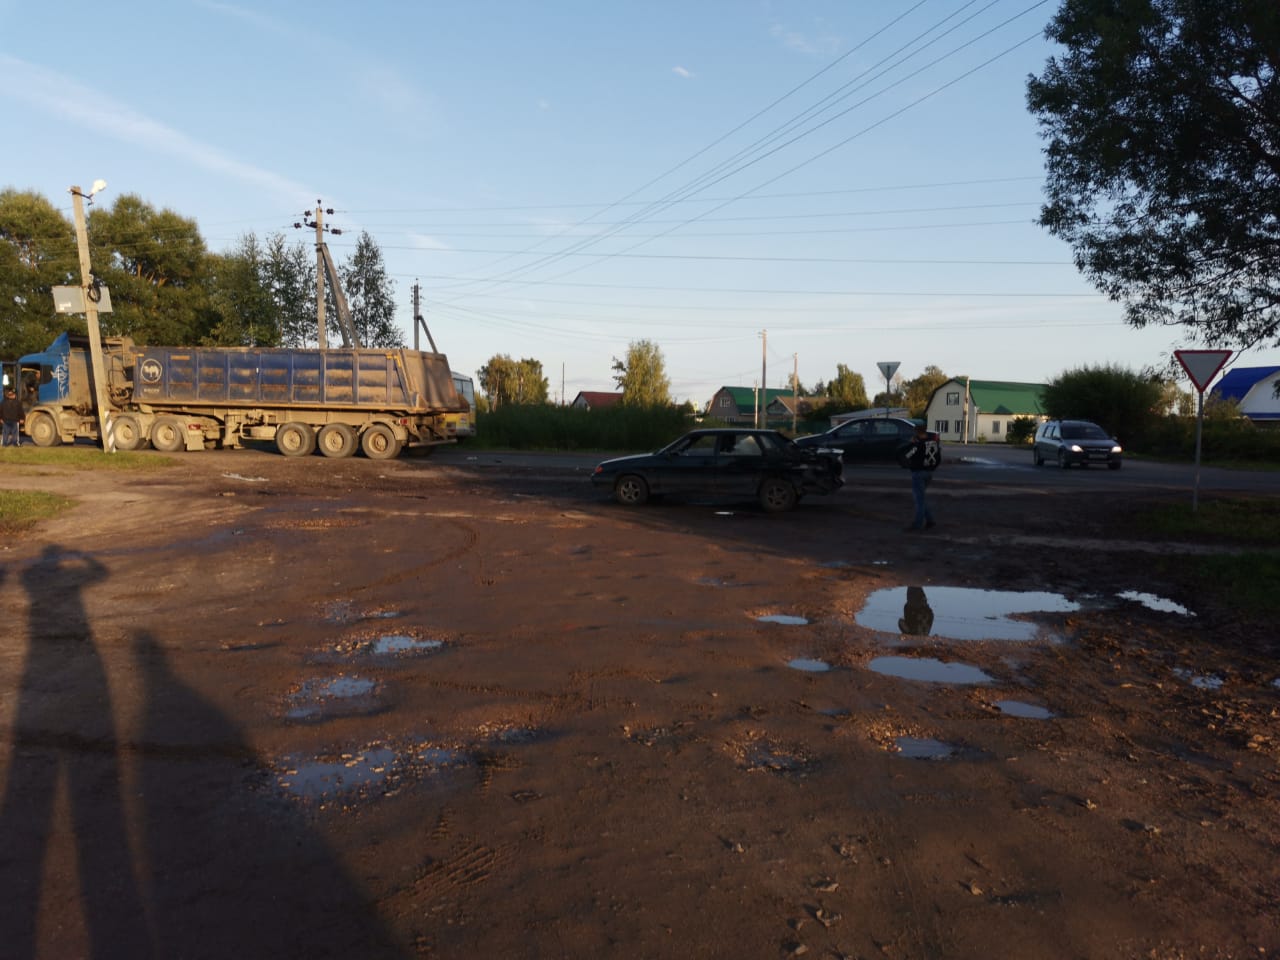 Двое детей пострадали в столкновении ВАЗ и Scania в Тверской области